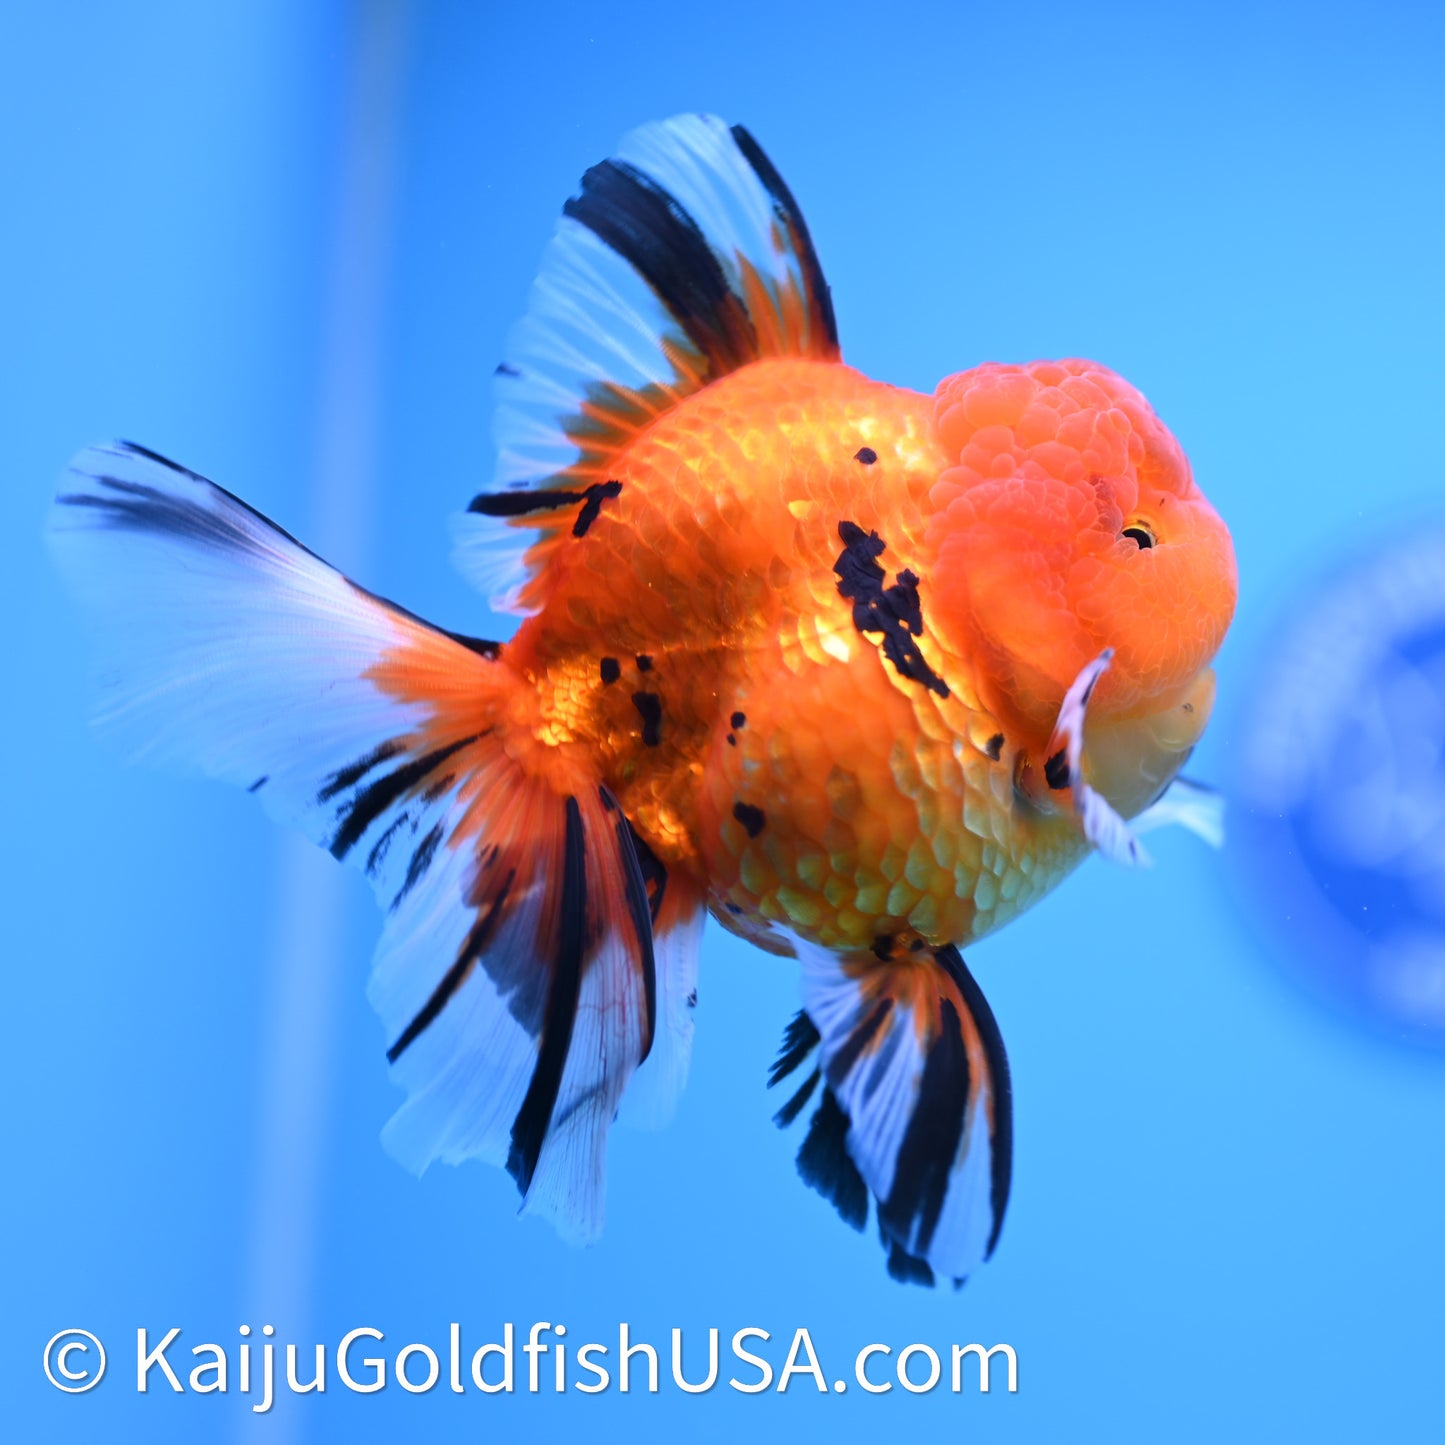 Tiger Rose Tail Oranda 3.8in Body (240628_OR13) - Kaiju Goldfish USA